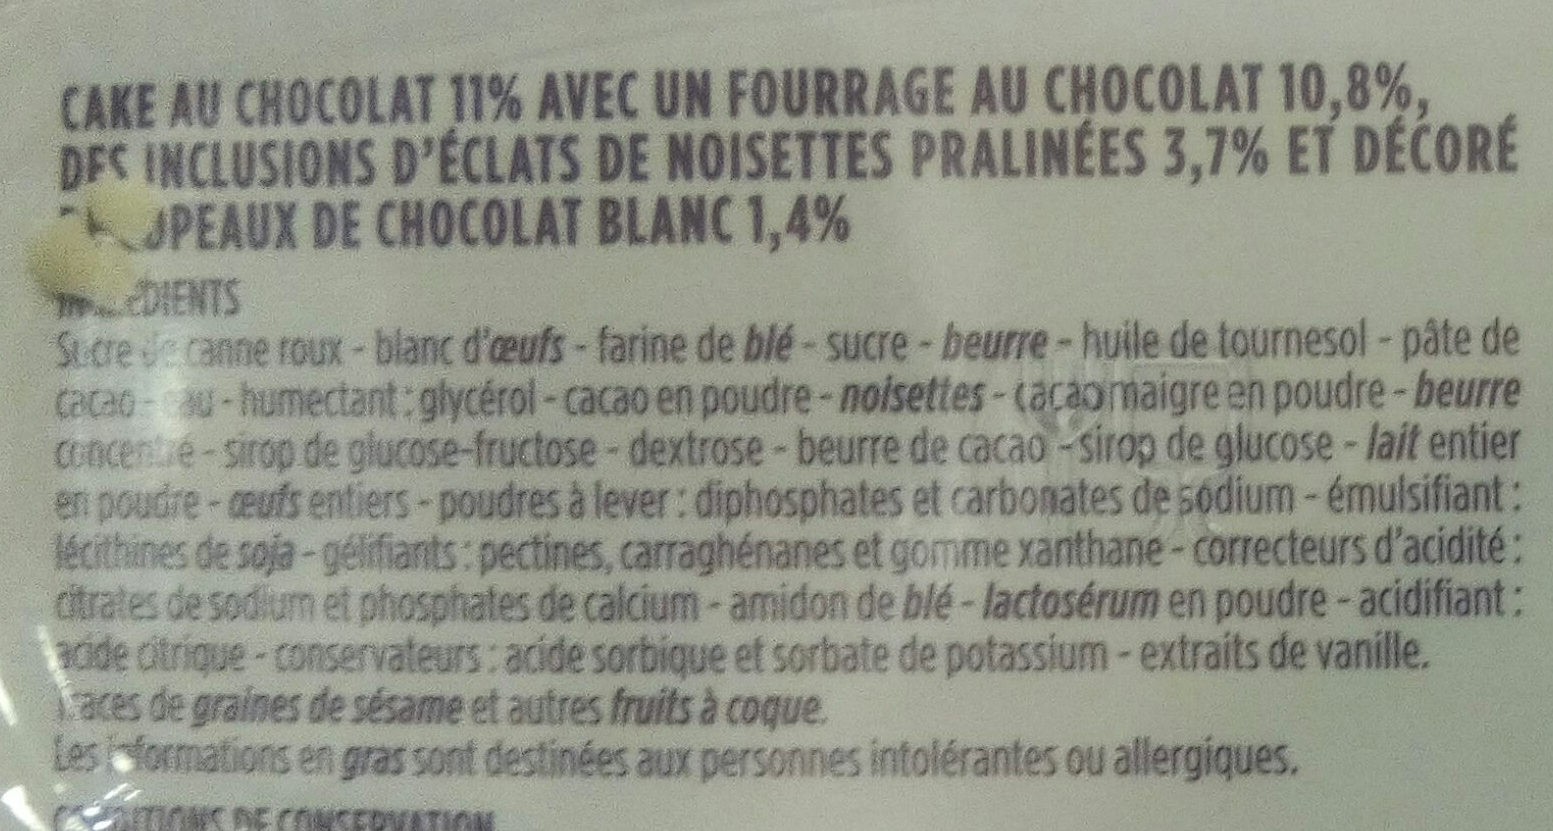 Cake gourmand chocolat fourrage chocolat - Ingredients - fr